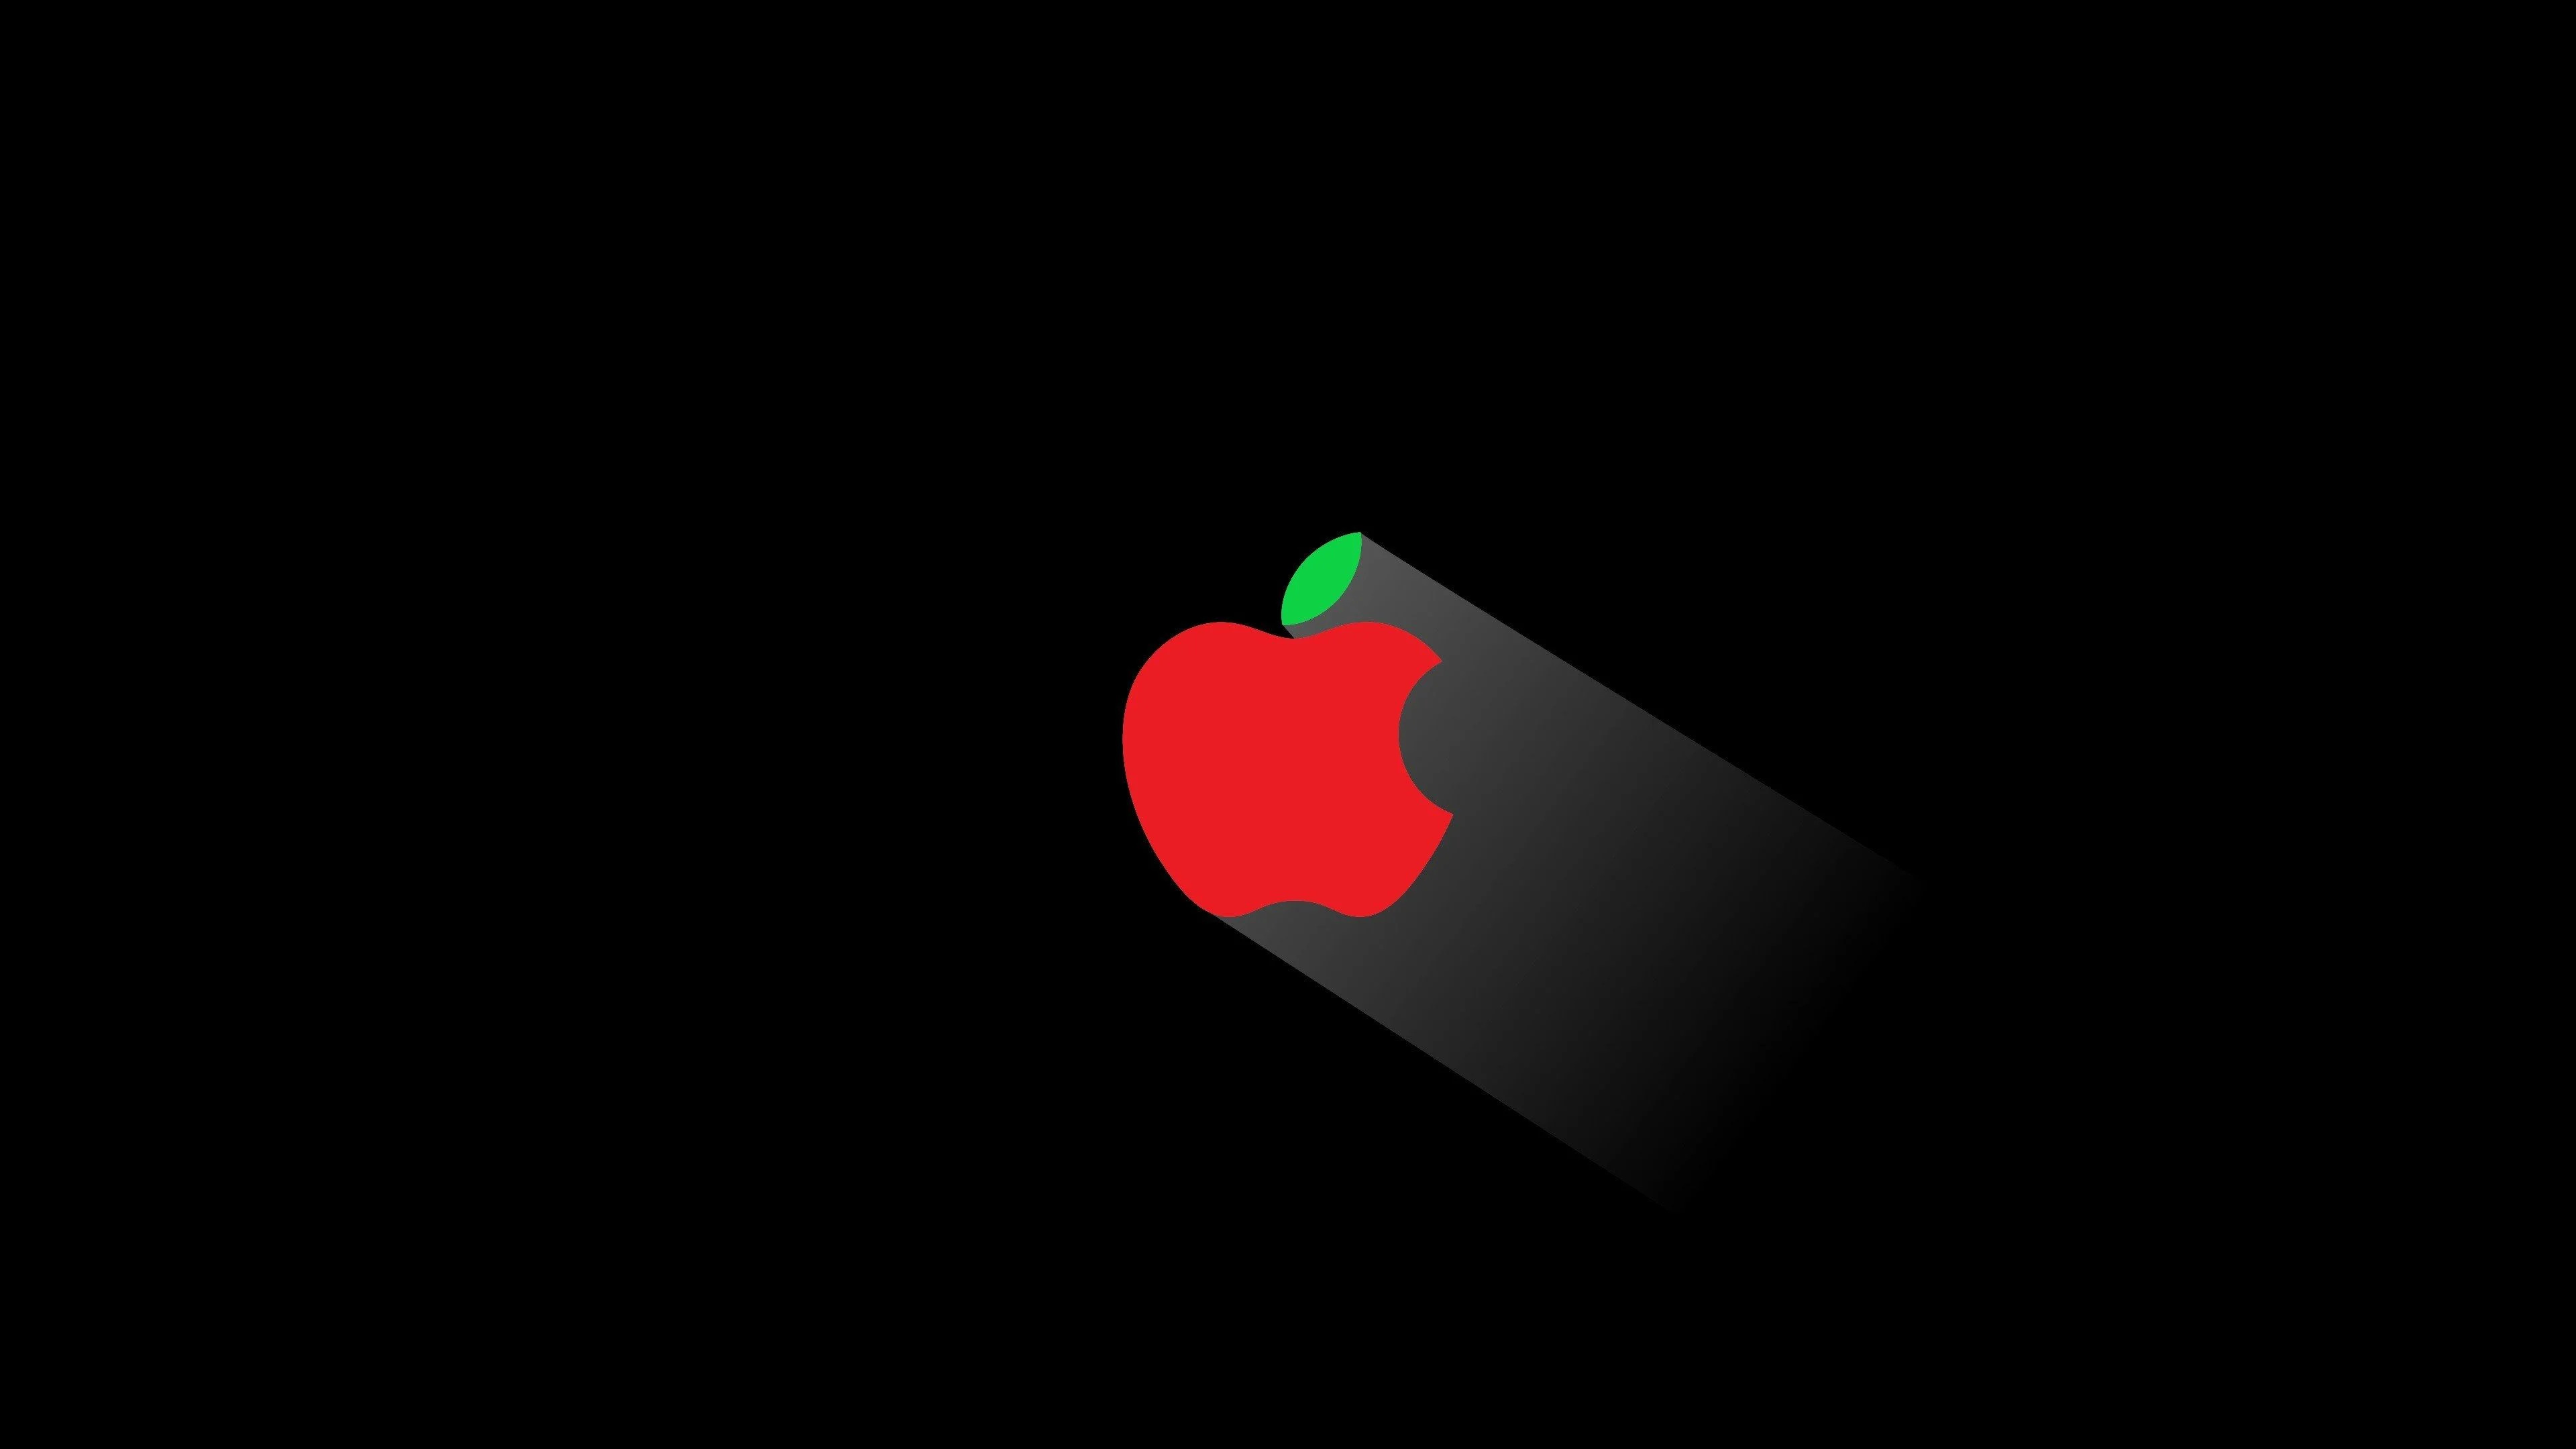 Apple logo, 4K wallpapers, High-definition graphics, Digital elegance, 3840x2160 4K Desktop